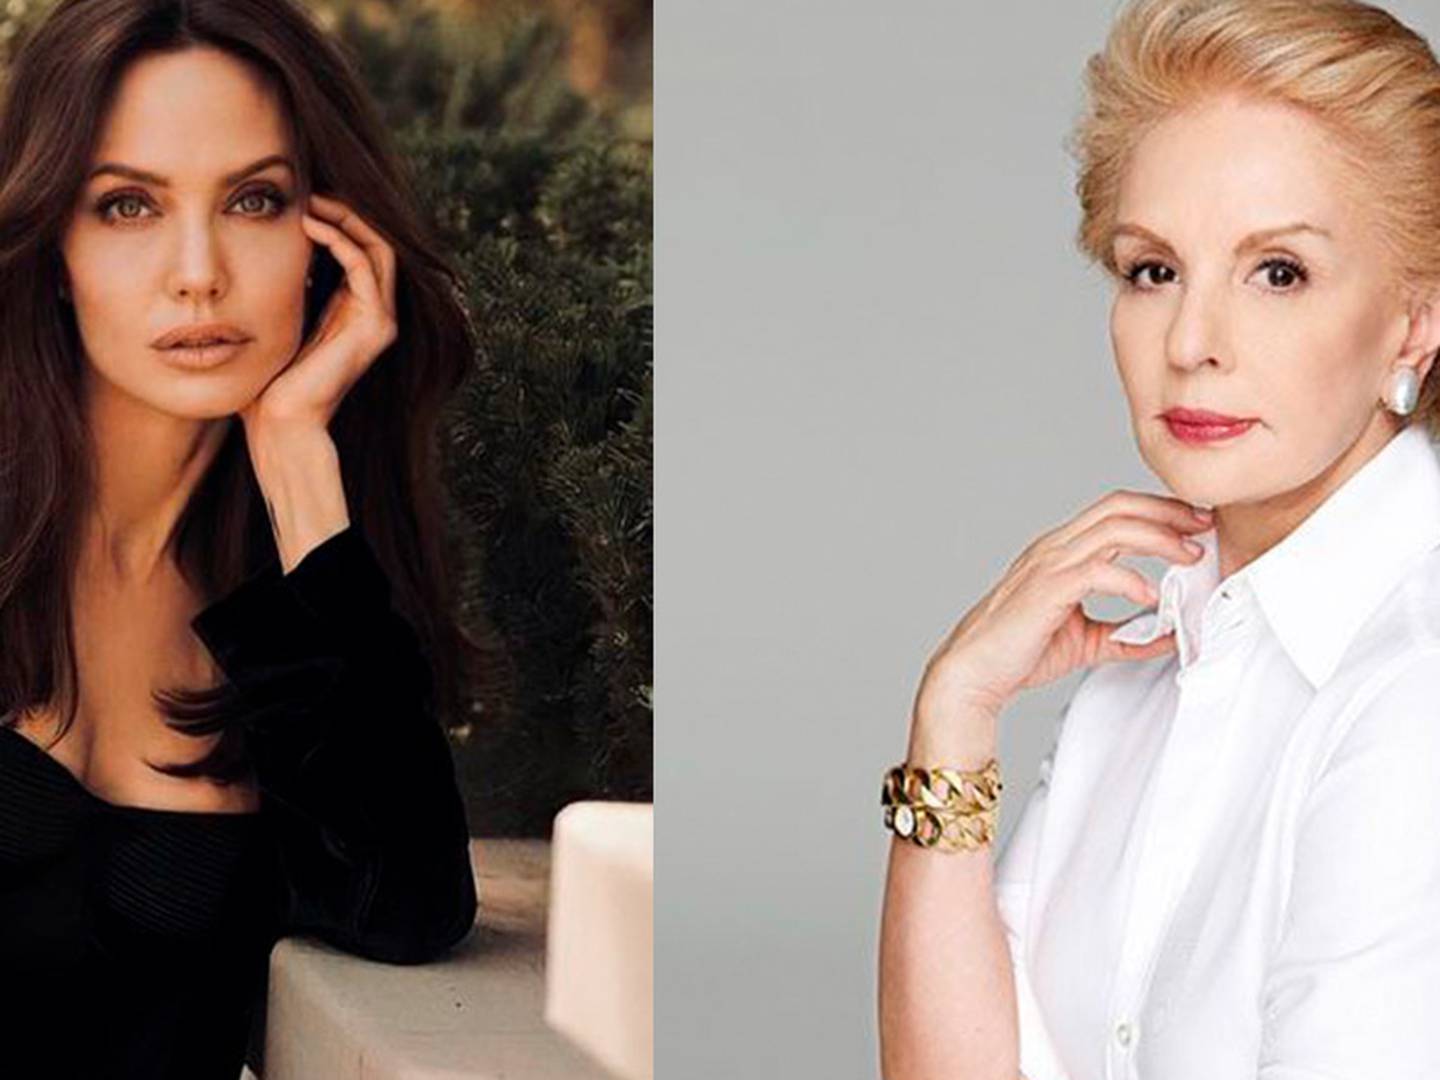 Ahorra en moda y viste tan elegante como Angelina Jolie con estos trucos